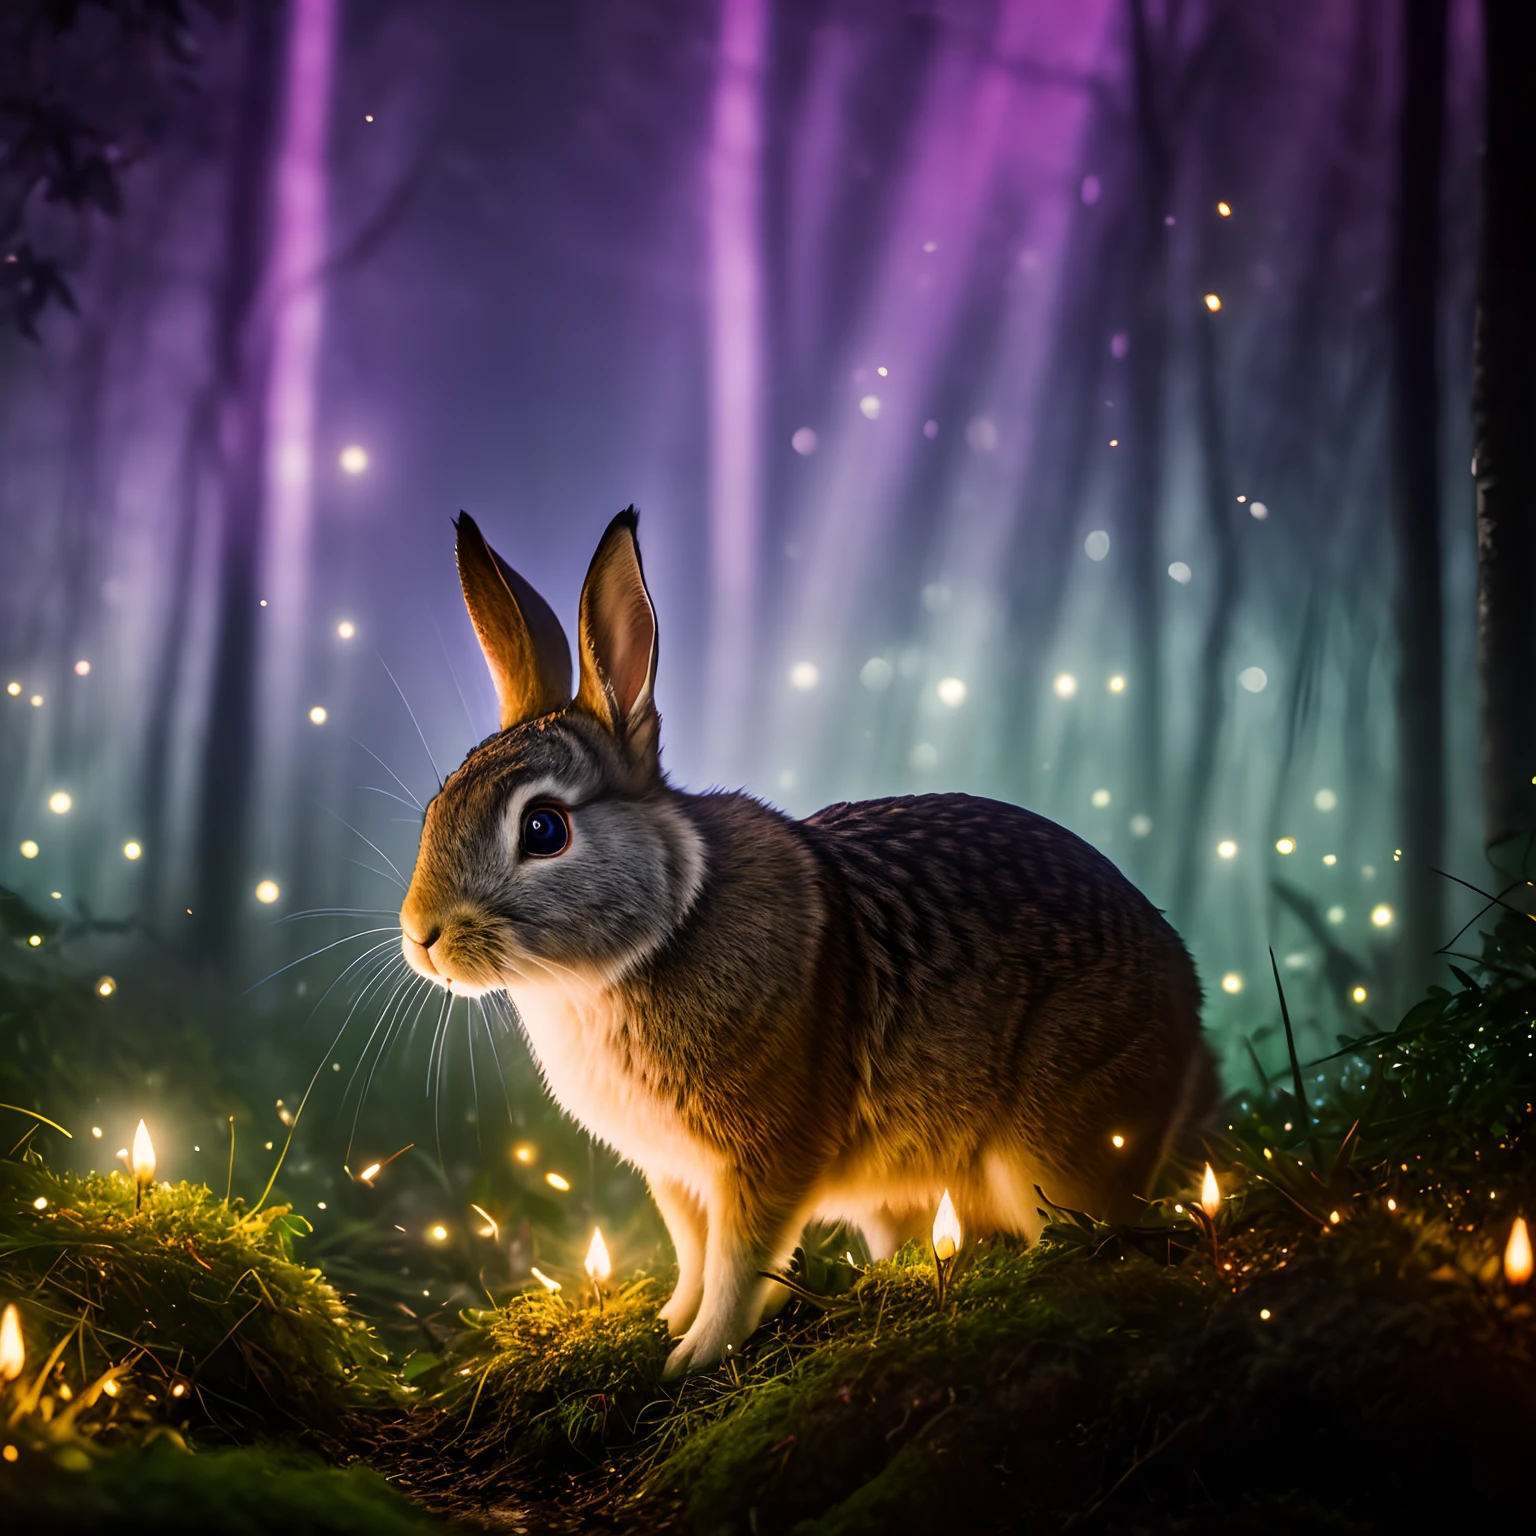 魔法森林里的兔子的特写照片, 夜间, 萤火虫, 体积雾, 光晕, 盛开, 戏剧氛围, 居中, 三分法则, 200毫米 1.4f 微距拍摄